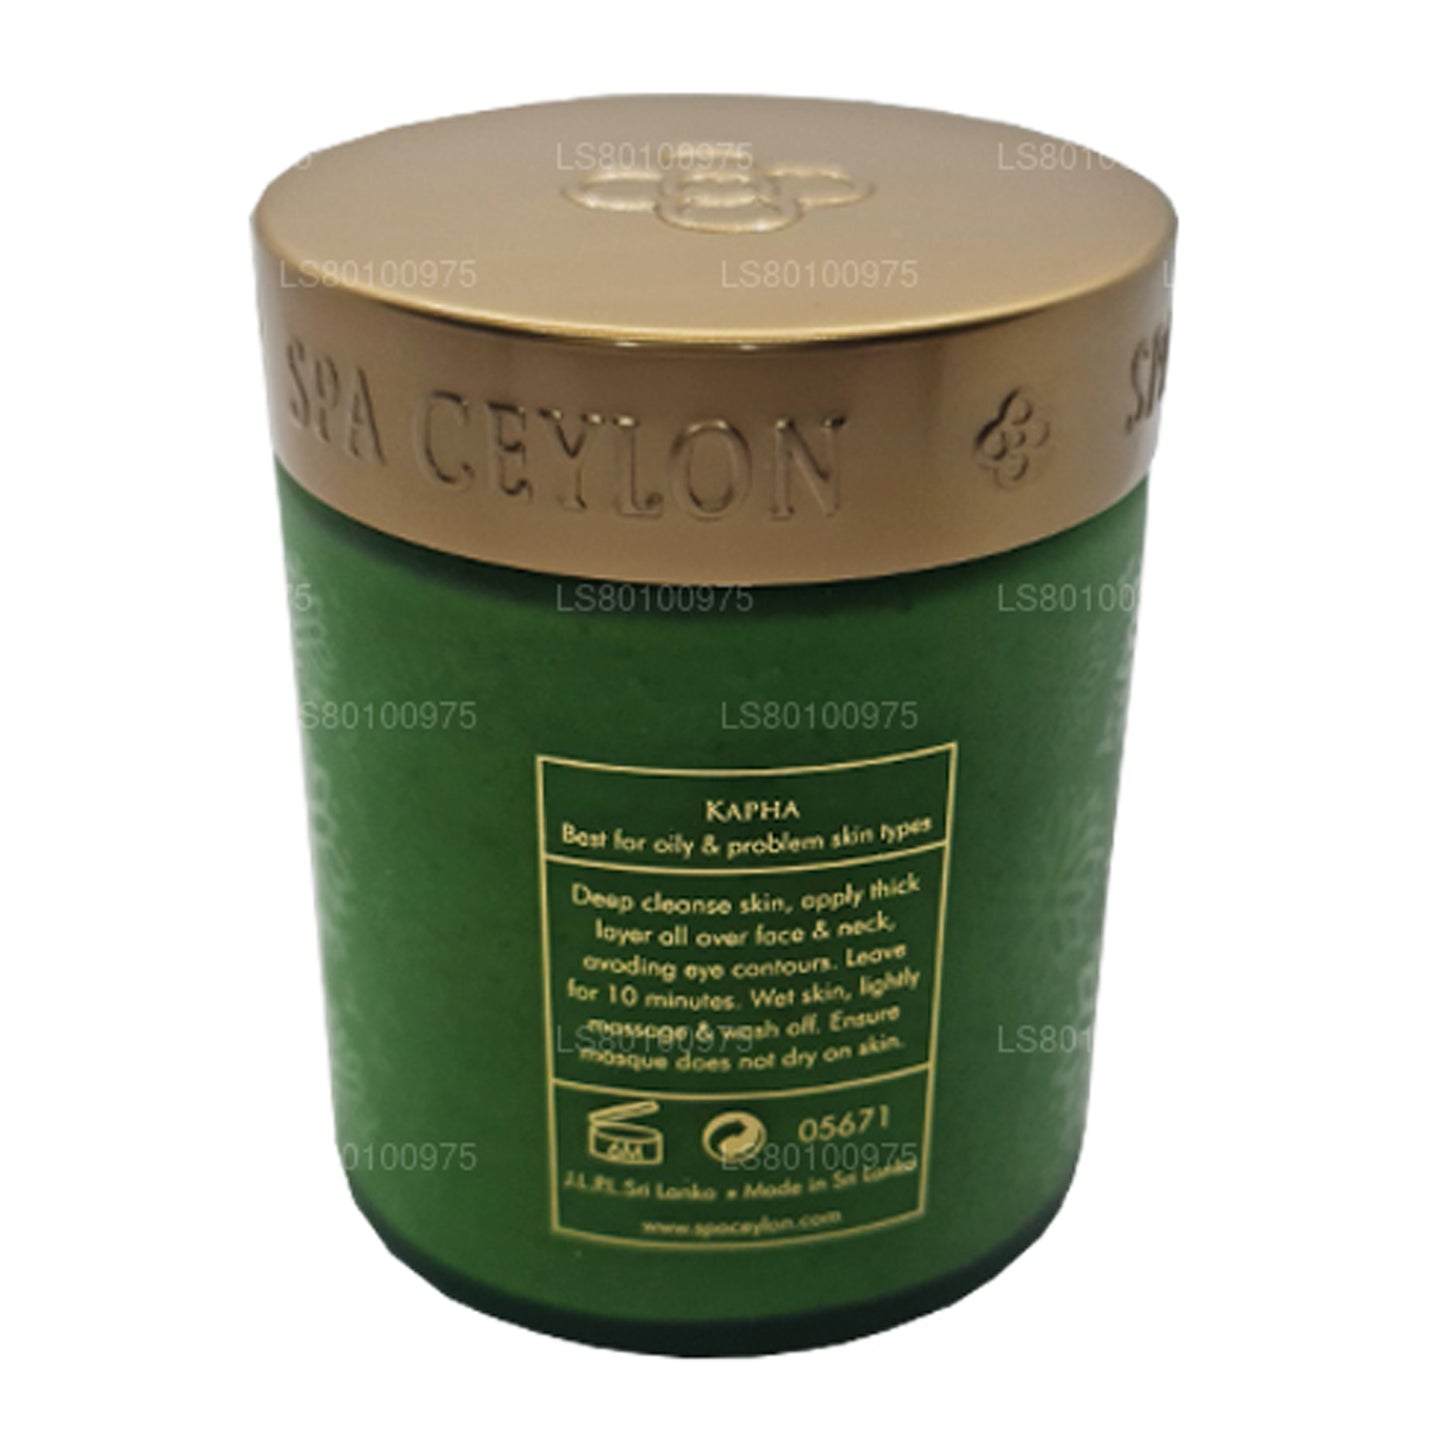 Spa Ceylon Reinigende Mineralmaske aus Neem und Teebaum (200 g)